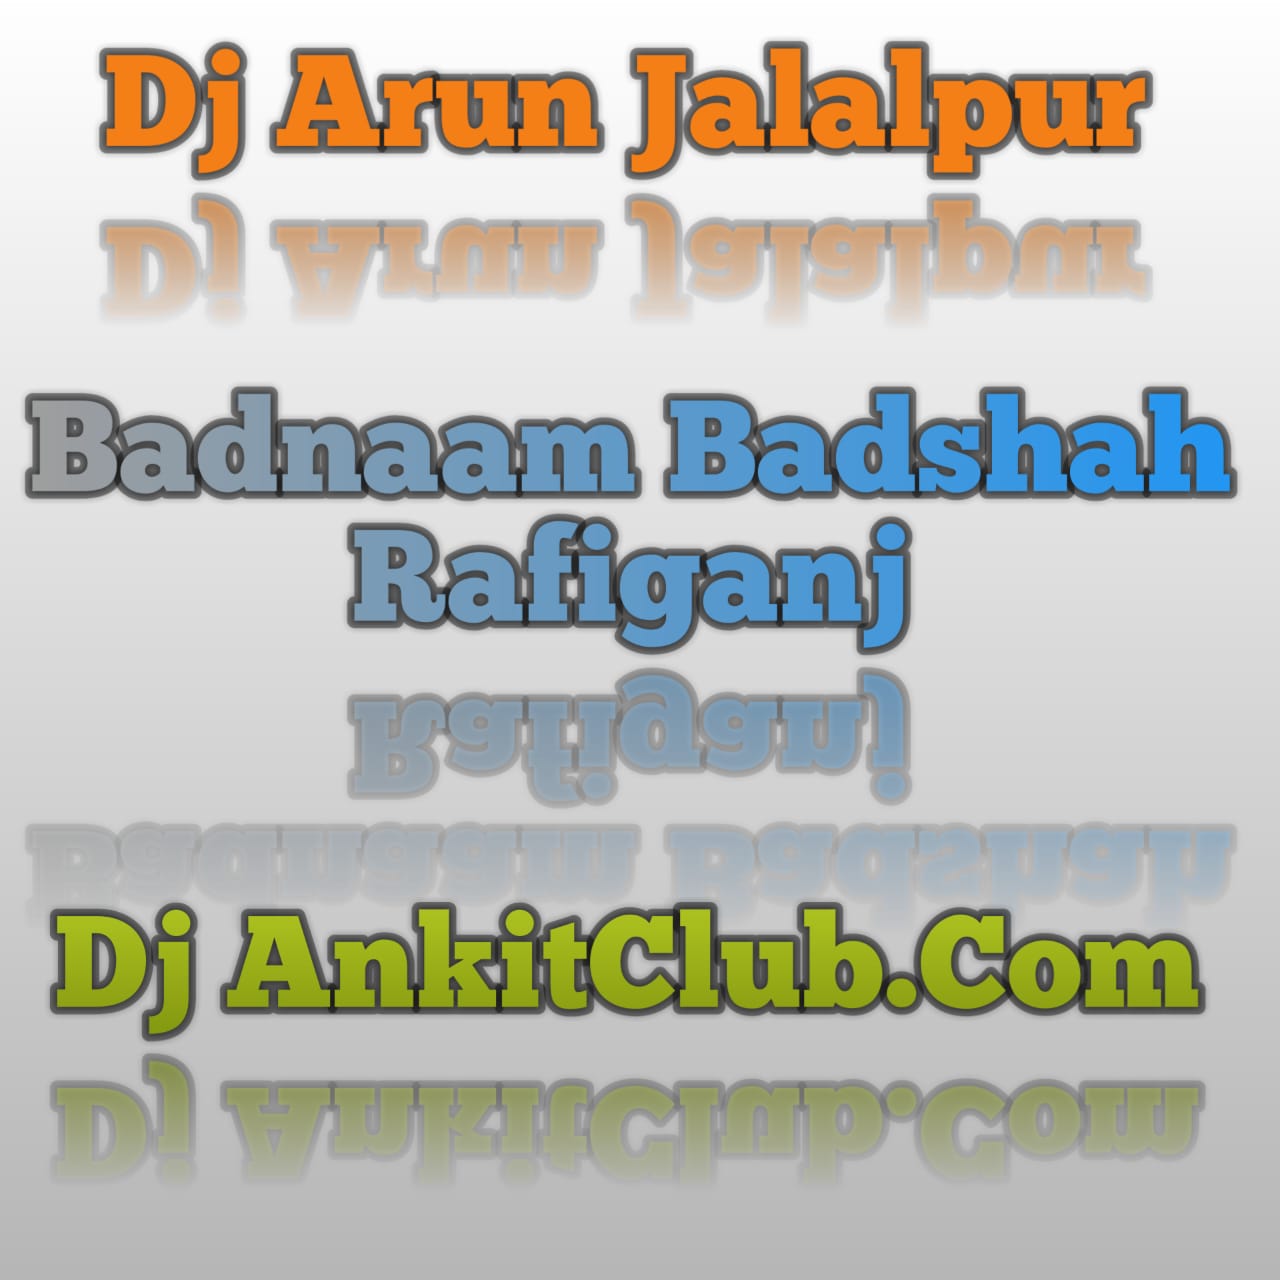 Piya Mor Jahu Jan Kalkatiya - Silpa Raj  - (Bhojpuri Hard Dj GMS Bass Remix 2022 Song) - Dj Arun Jalalpur